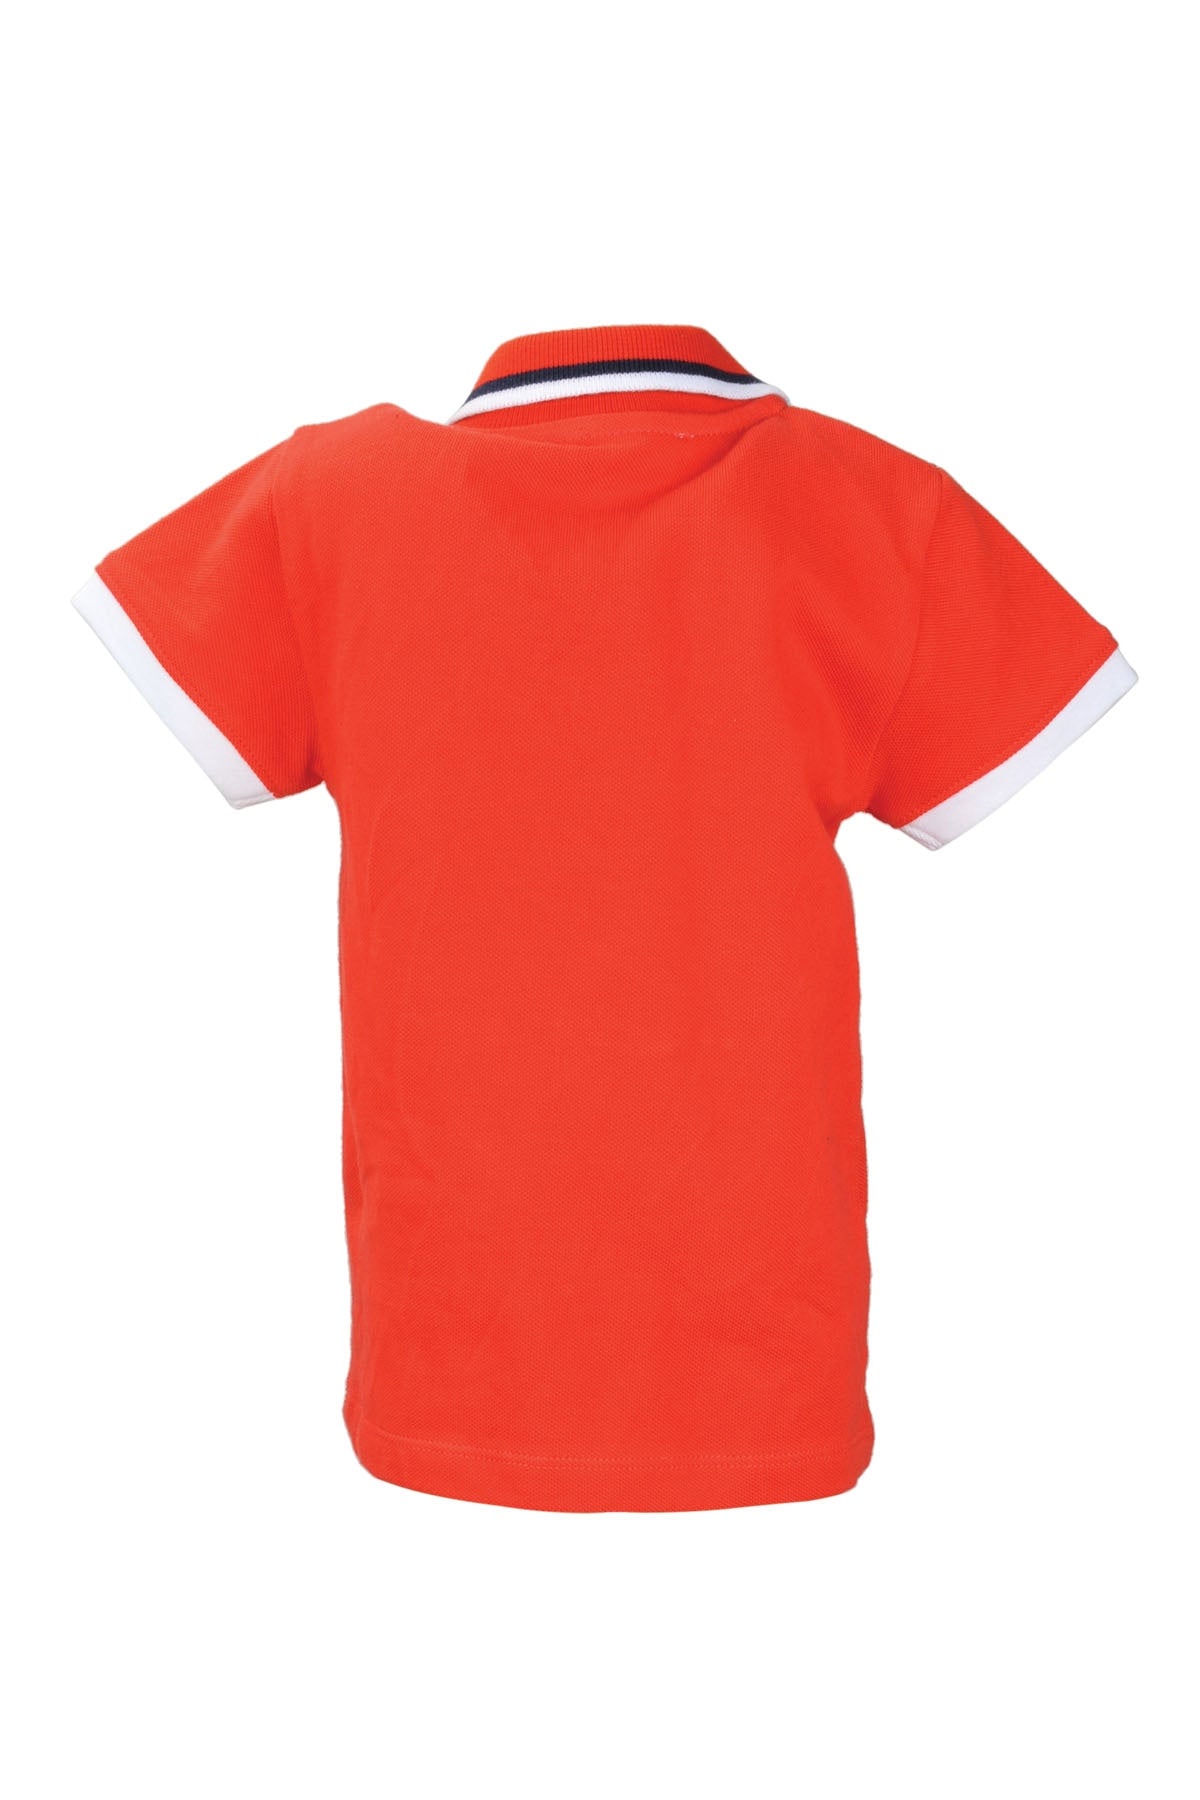 Erkek Bebek Kırmızı Marin Polo Yaka T-Shirt (9ay-4yaş)-1